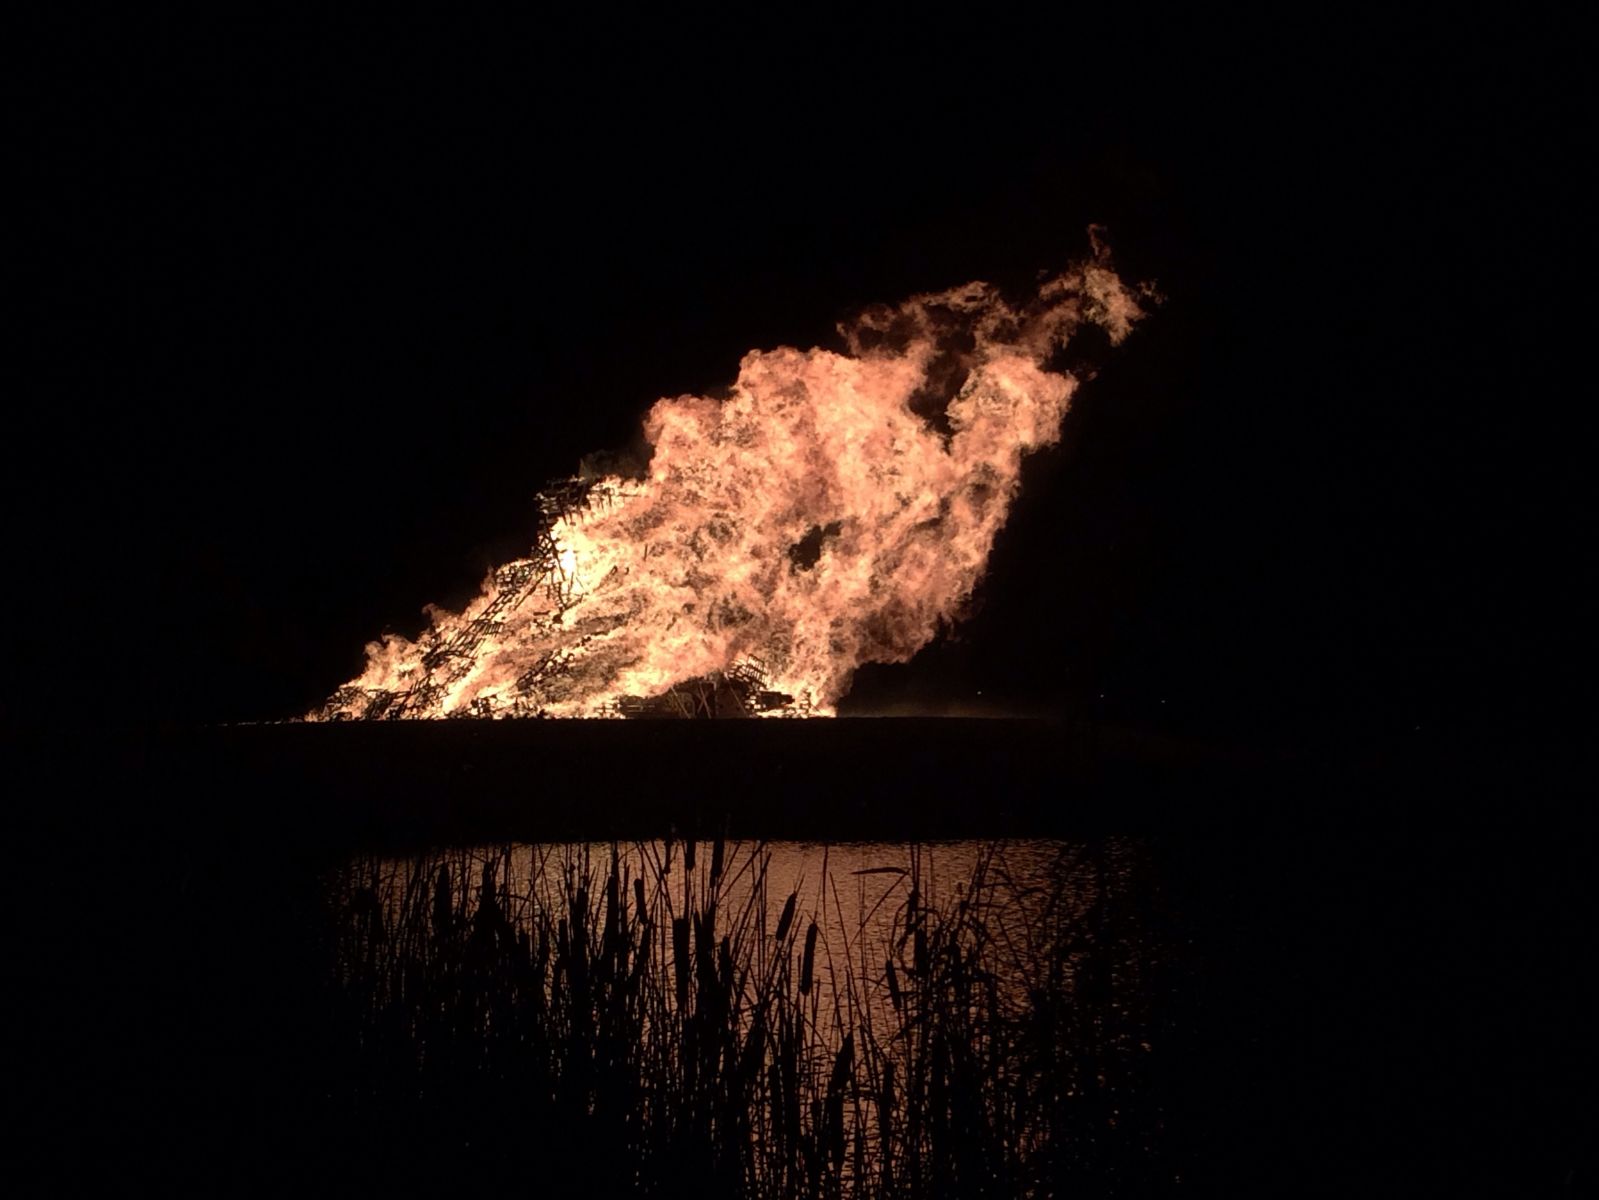 Bonfire 2013